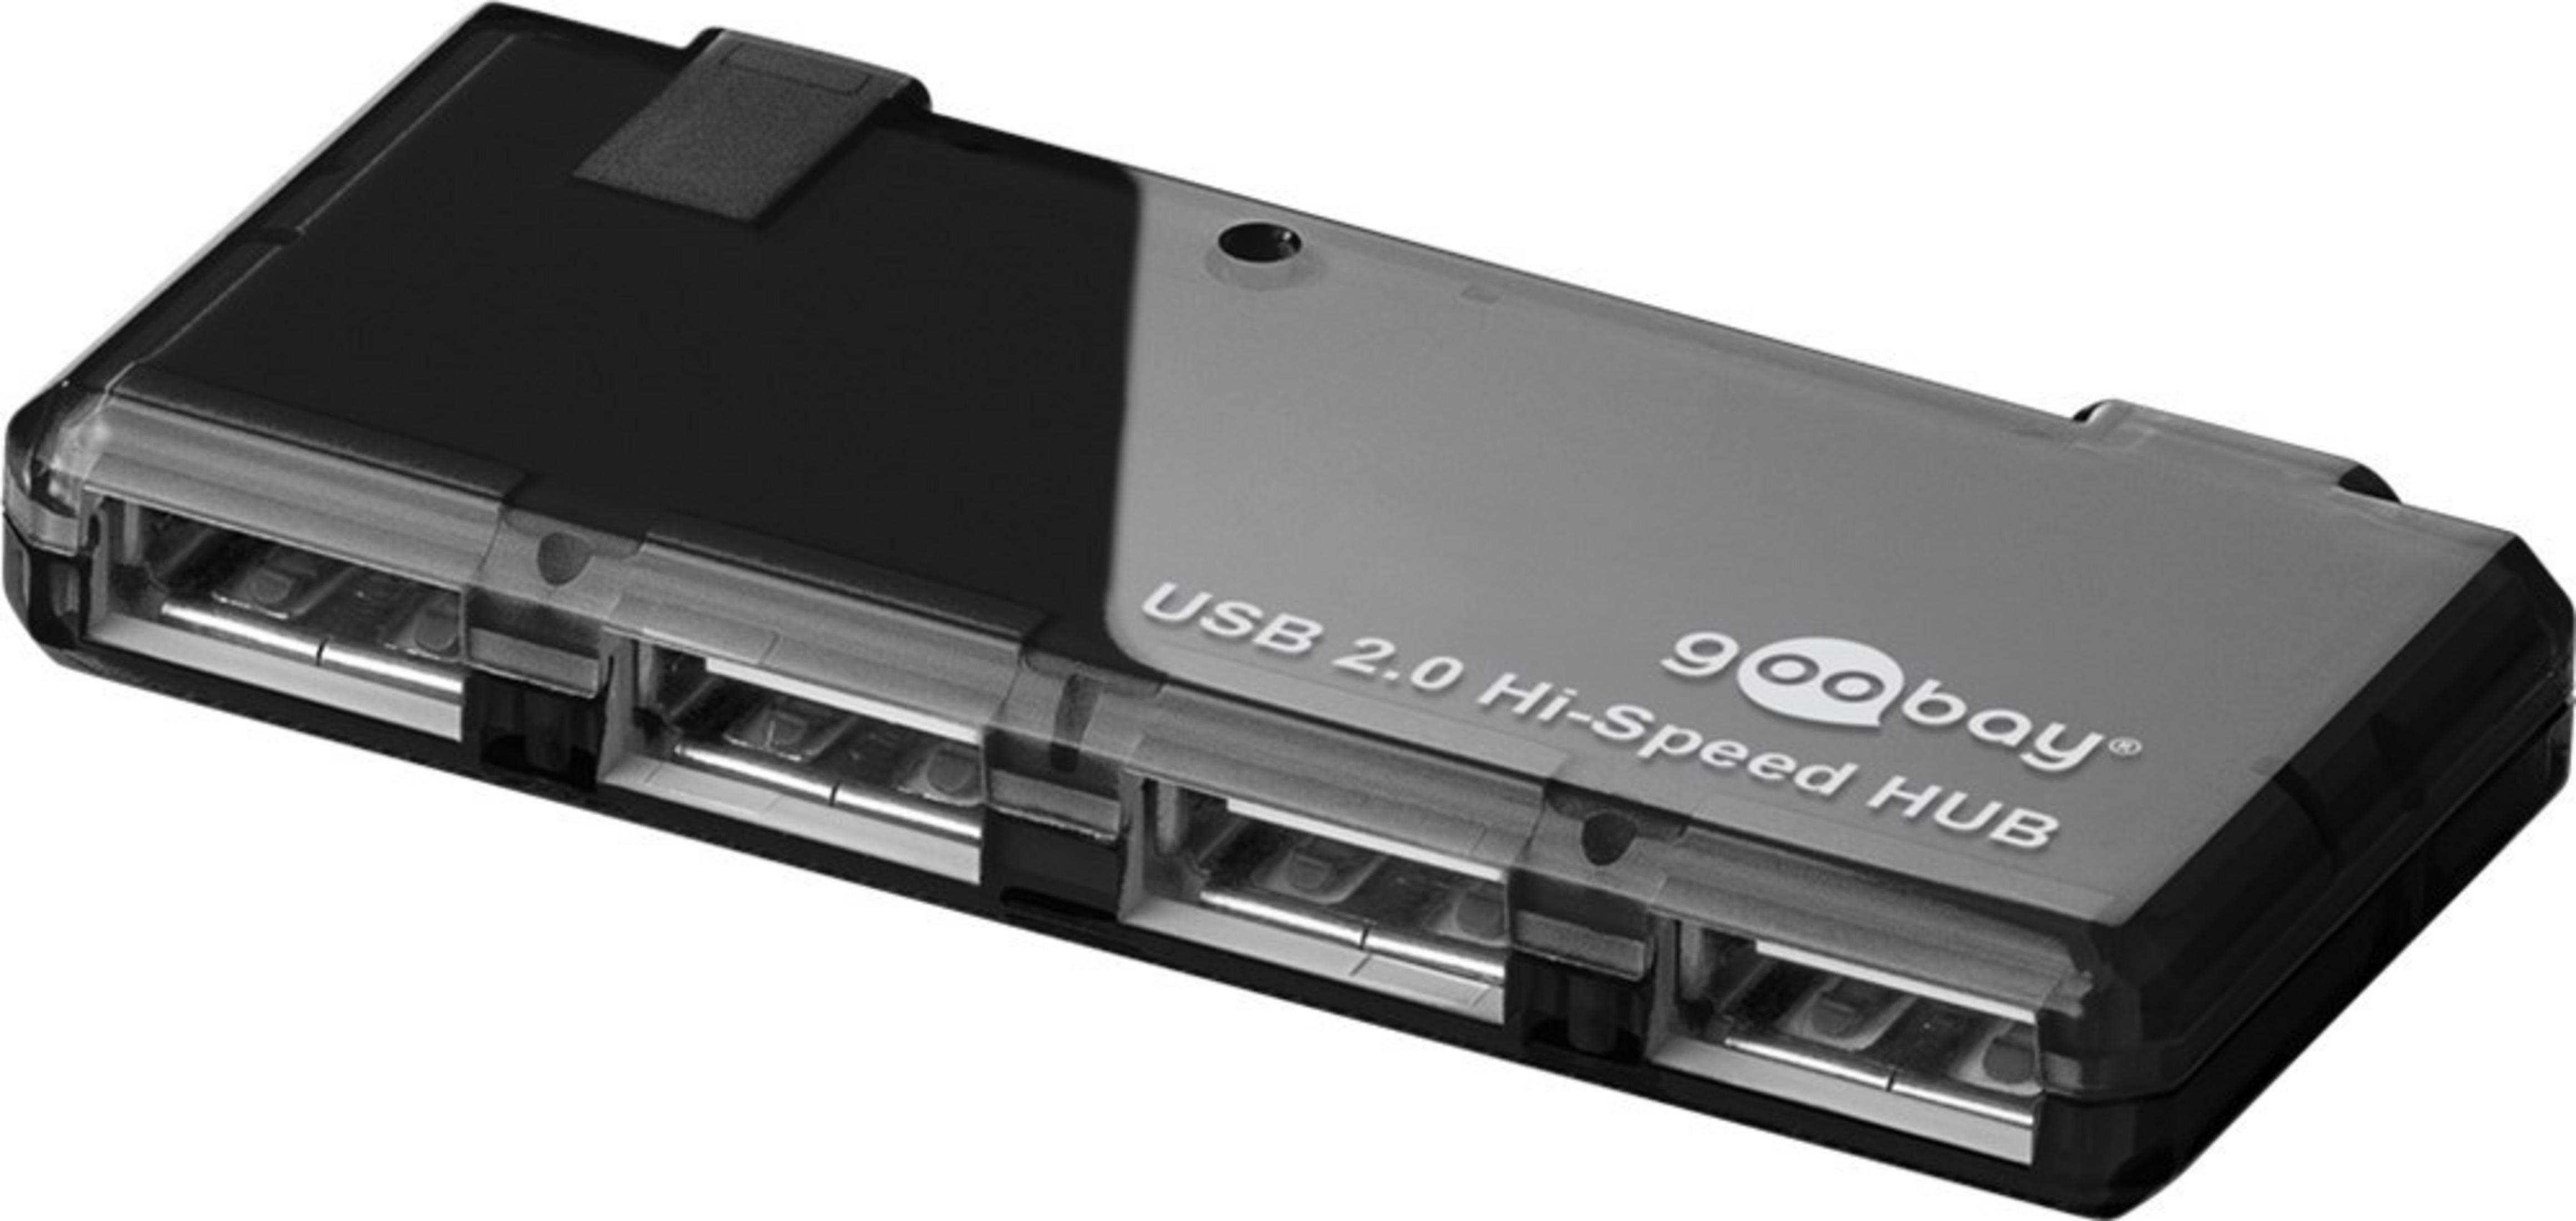 GOOBAY 95912 HUB, NETZTEIL, Schwarz 2.0 HUB MIT 4-FACH USB Hi-Speed